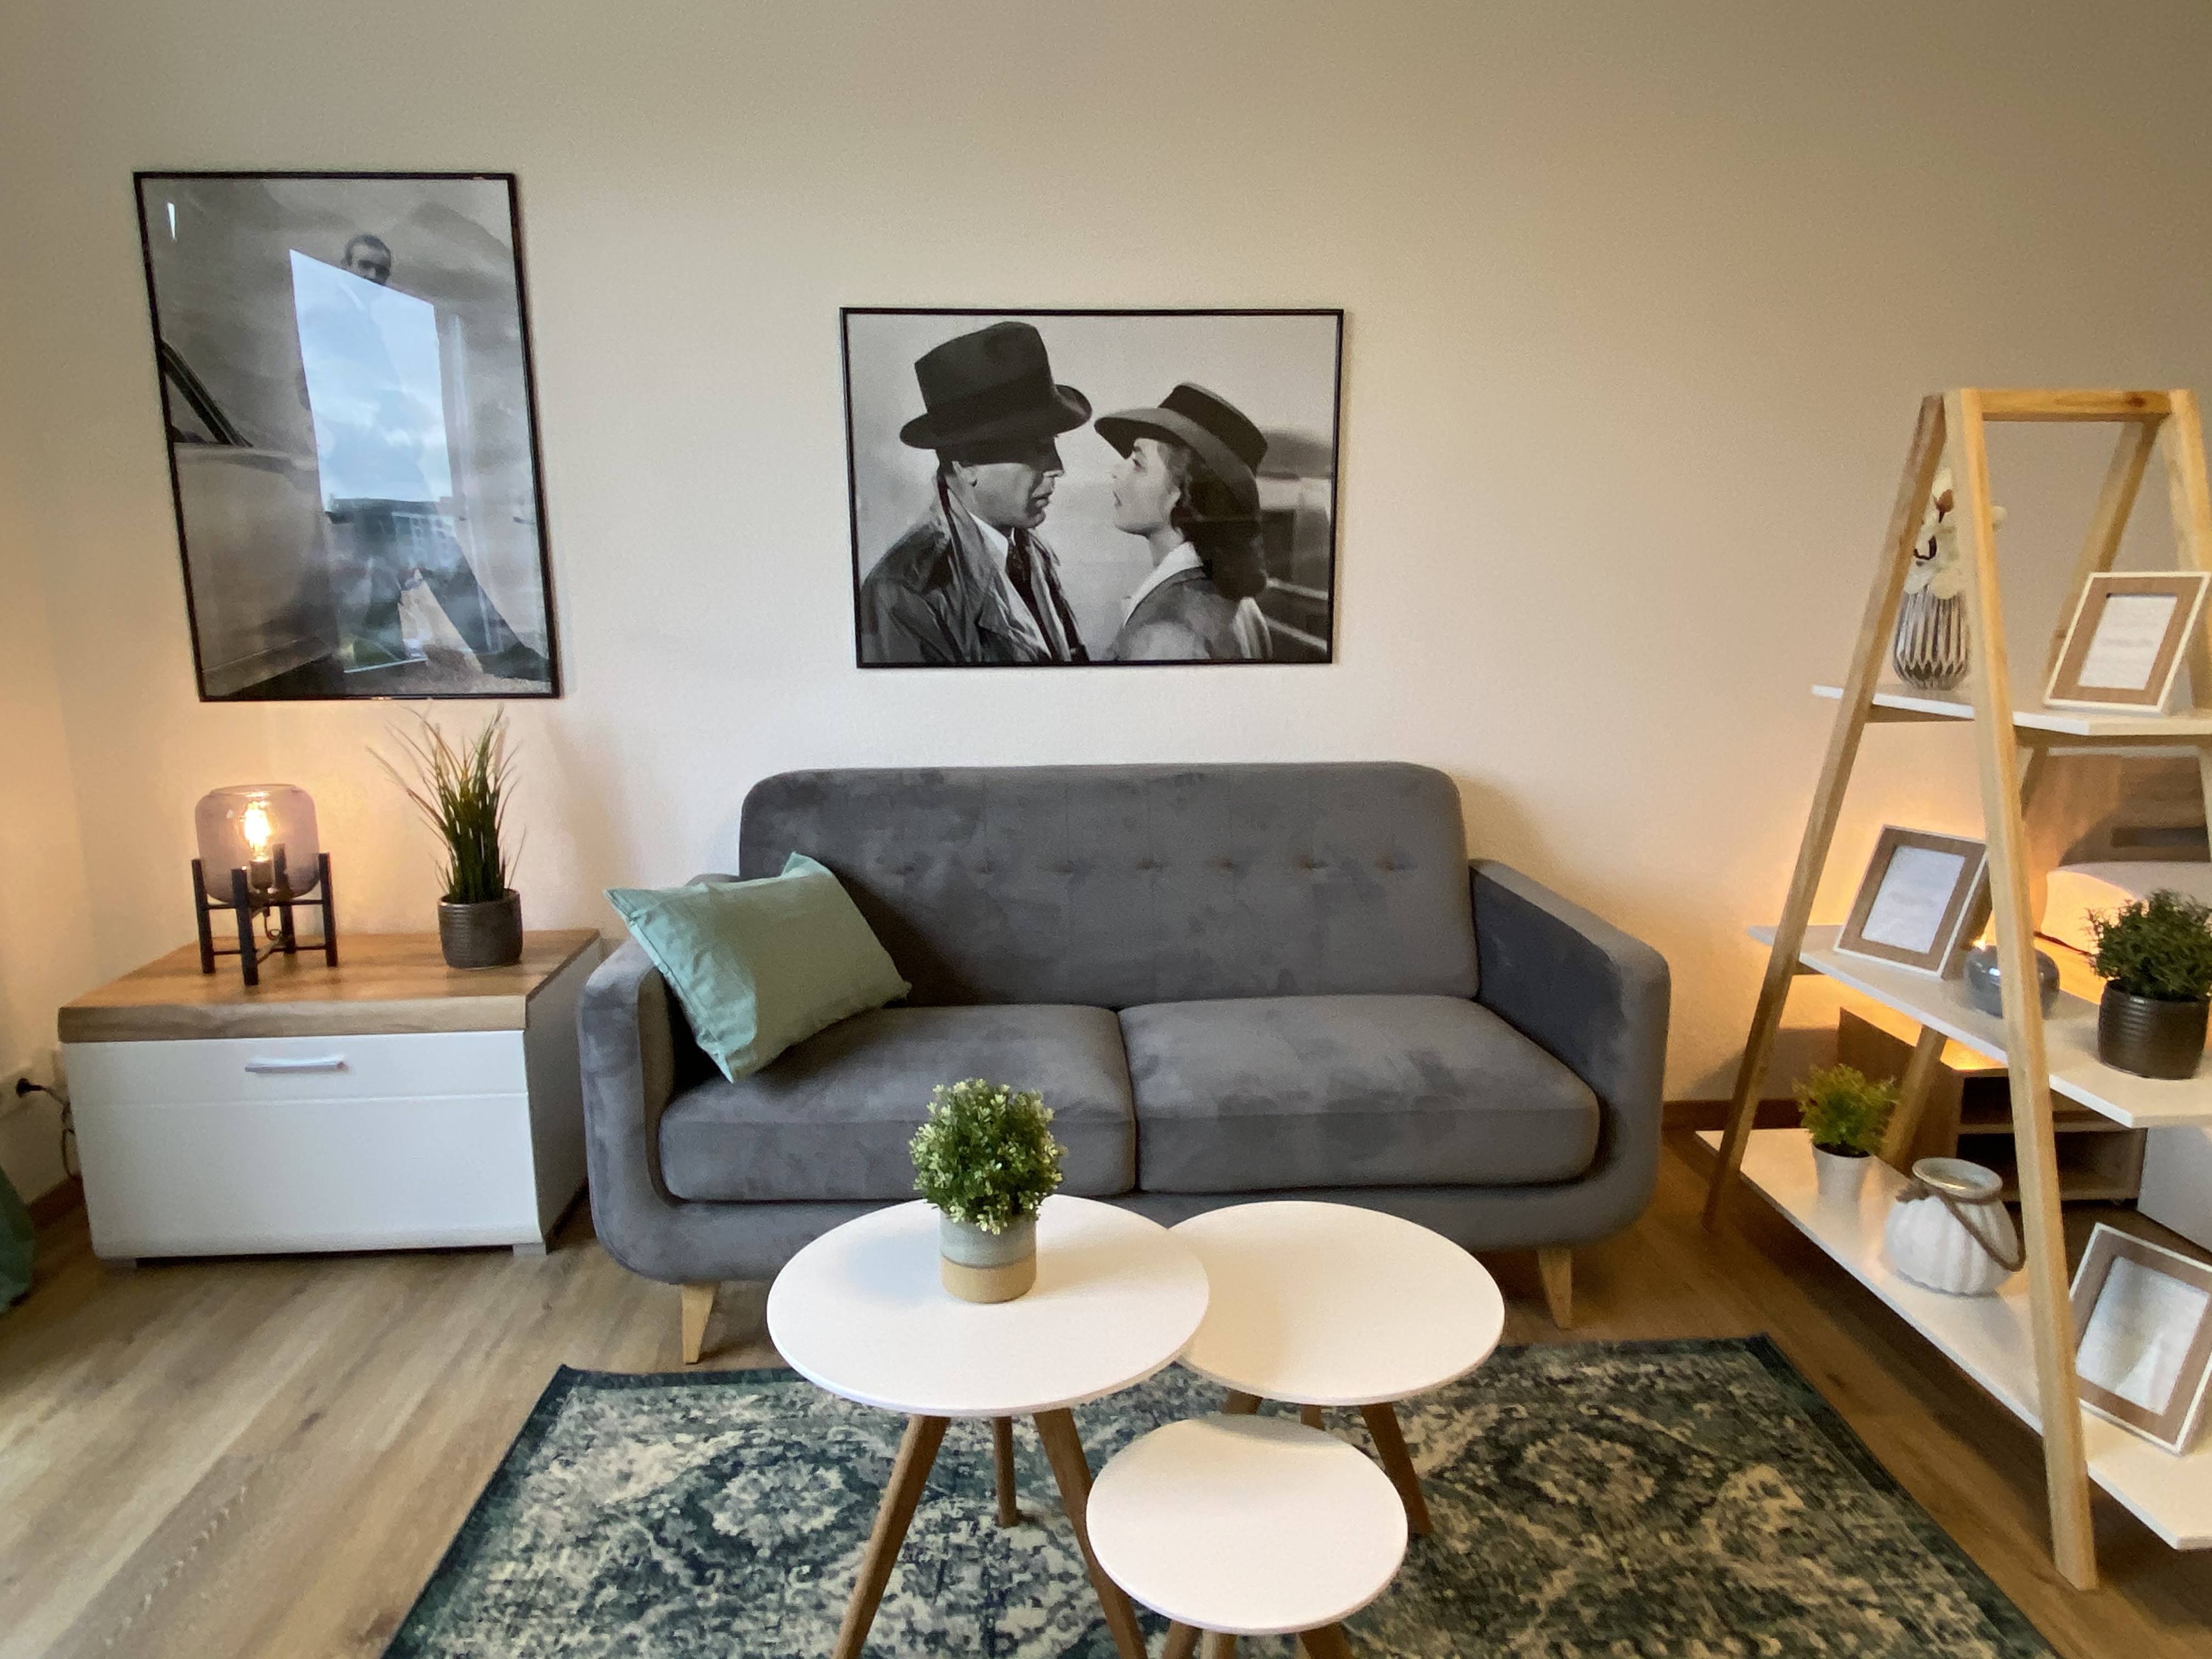 Möblierte Wohnung kaufen in Frankfurt-Ostend als Kapitalanlage
				